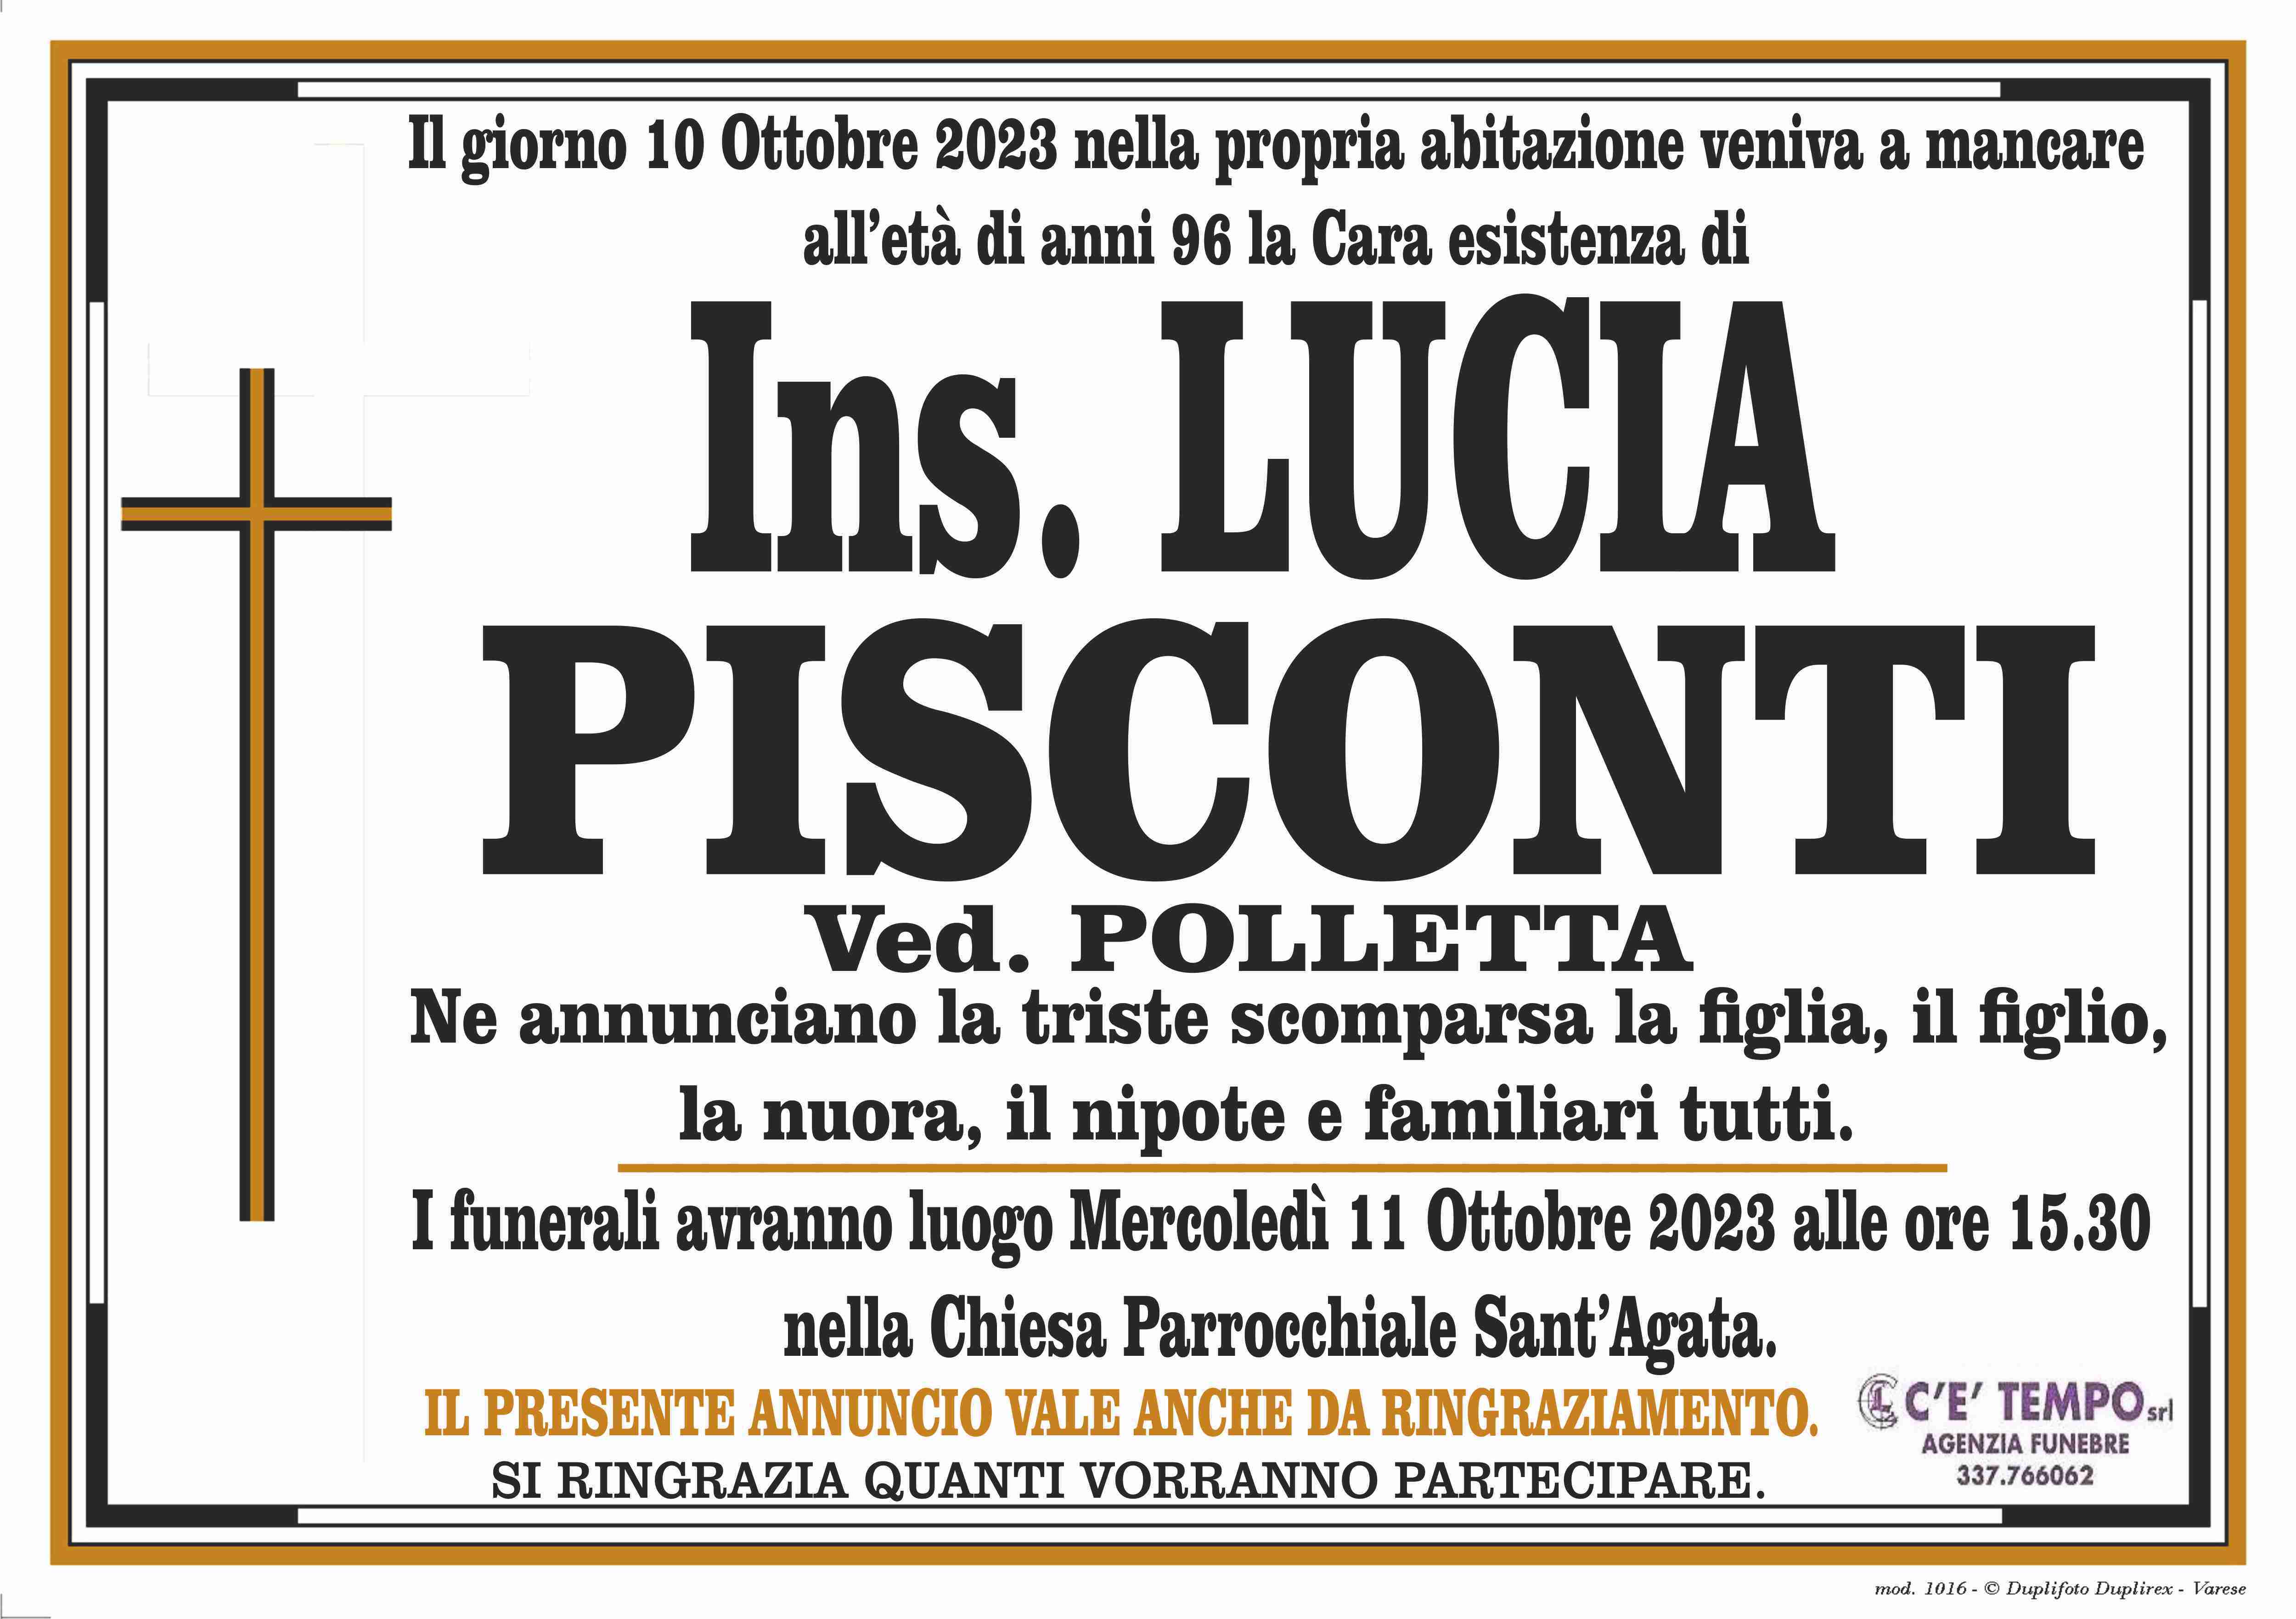 Lucia Pisconti